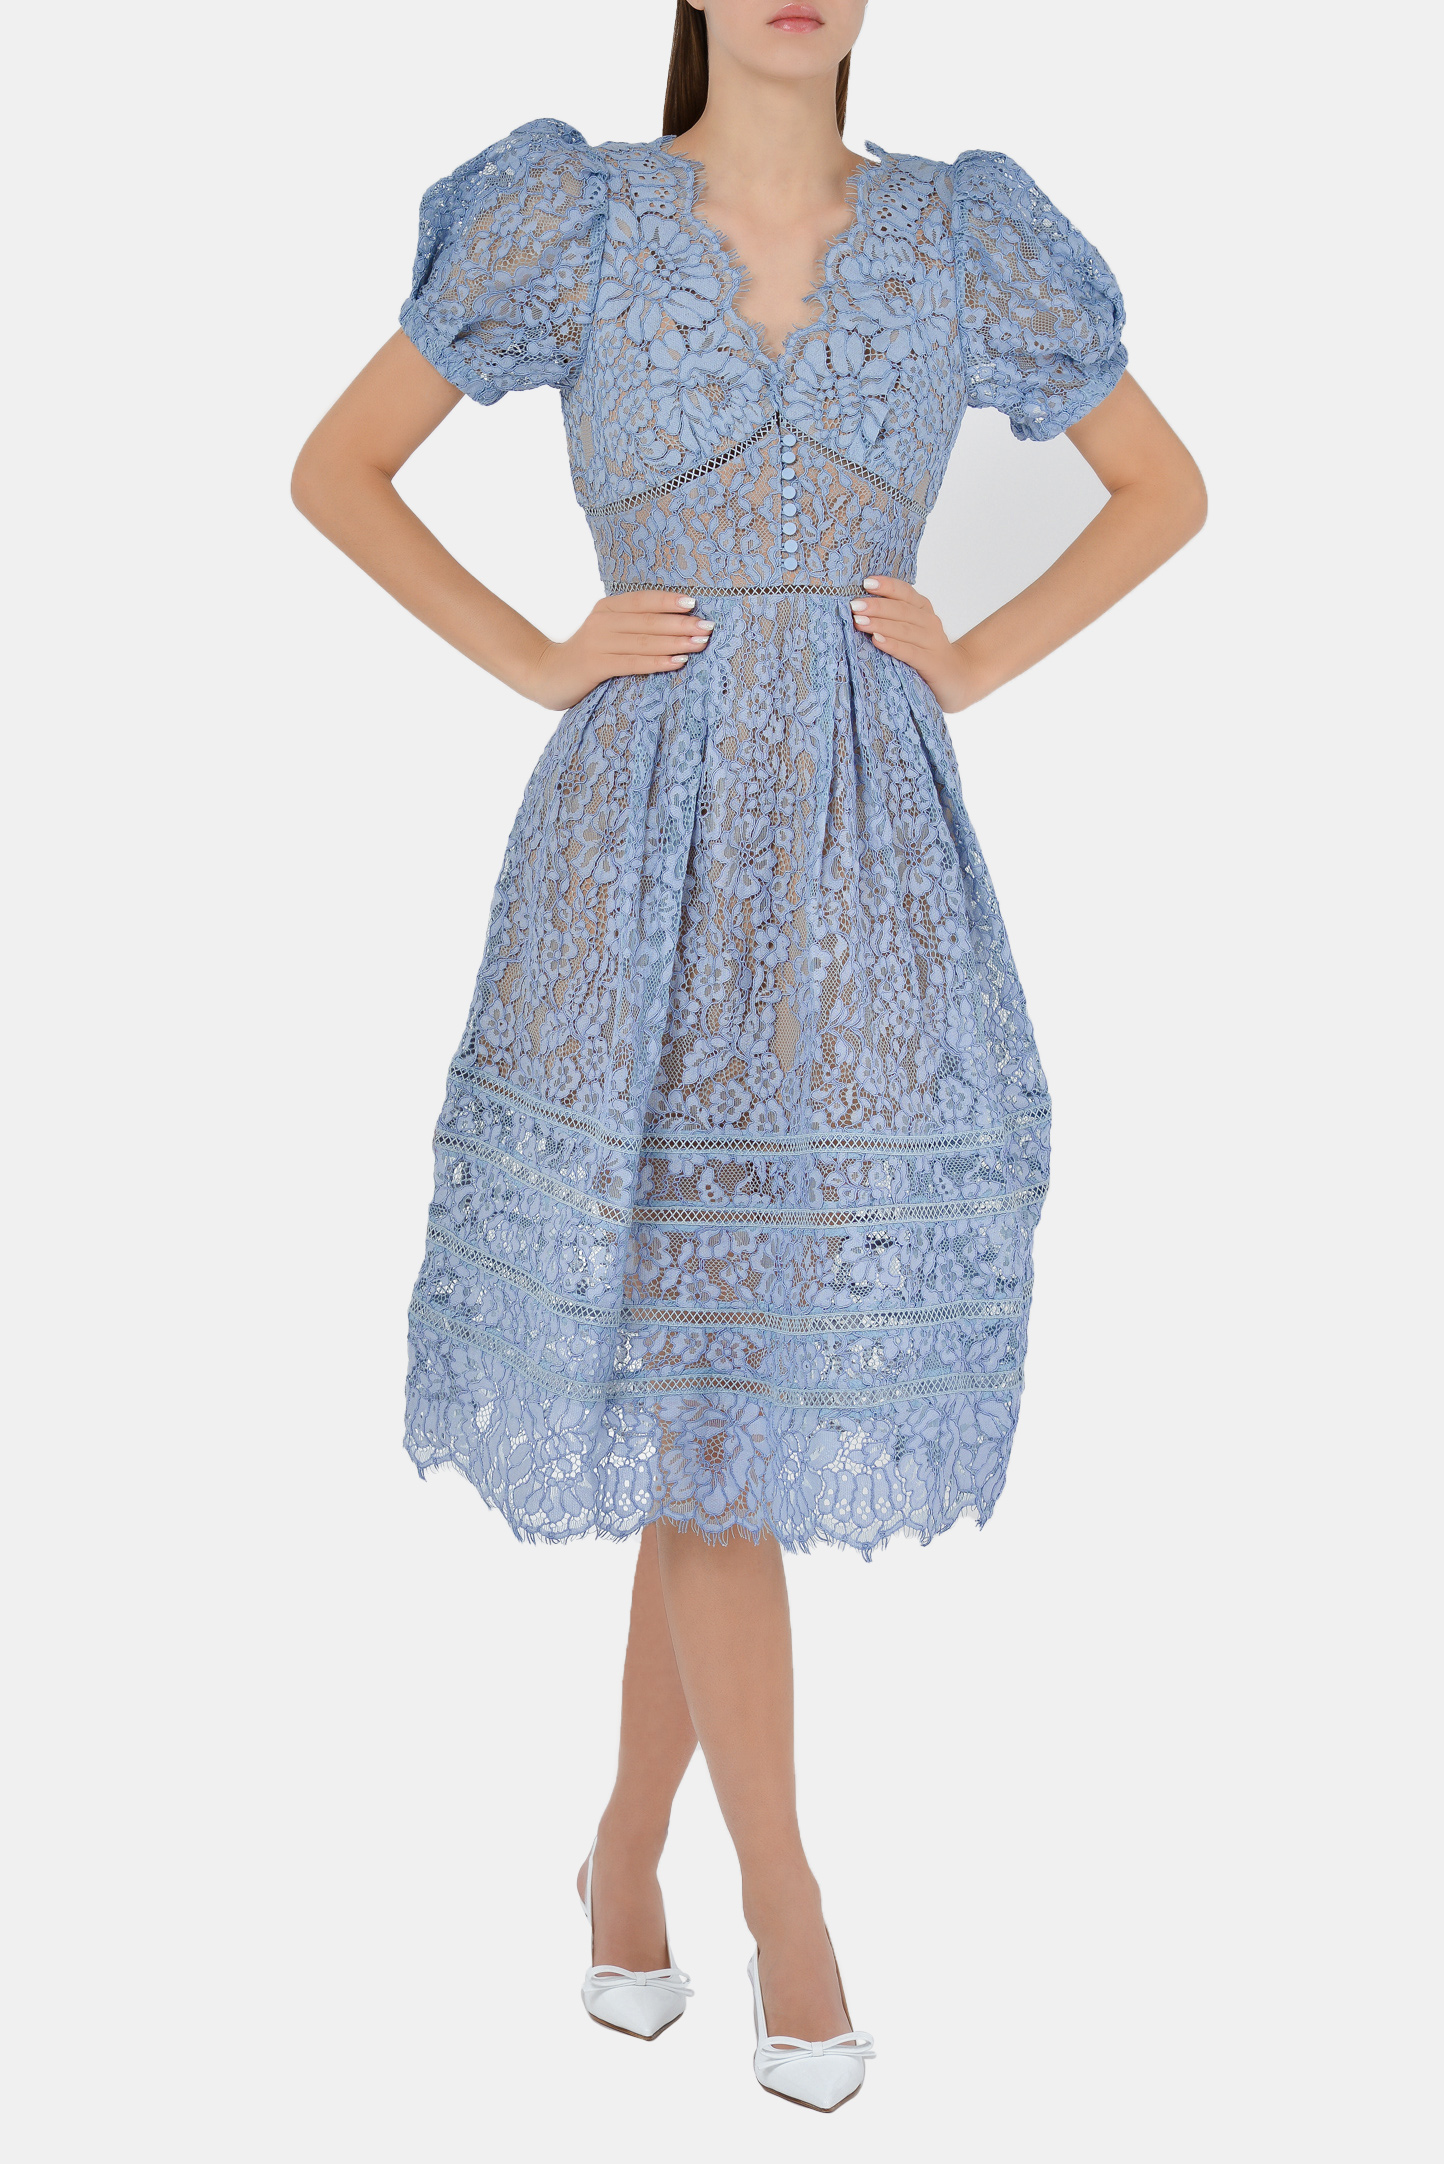 Платье SELF PORTRAIT RS21-035B, цвет: Голубой, Женский